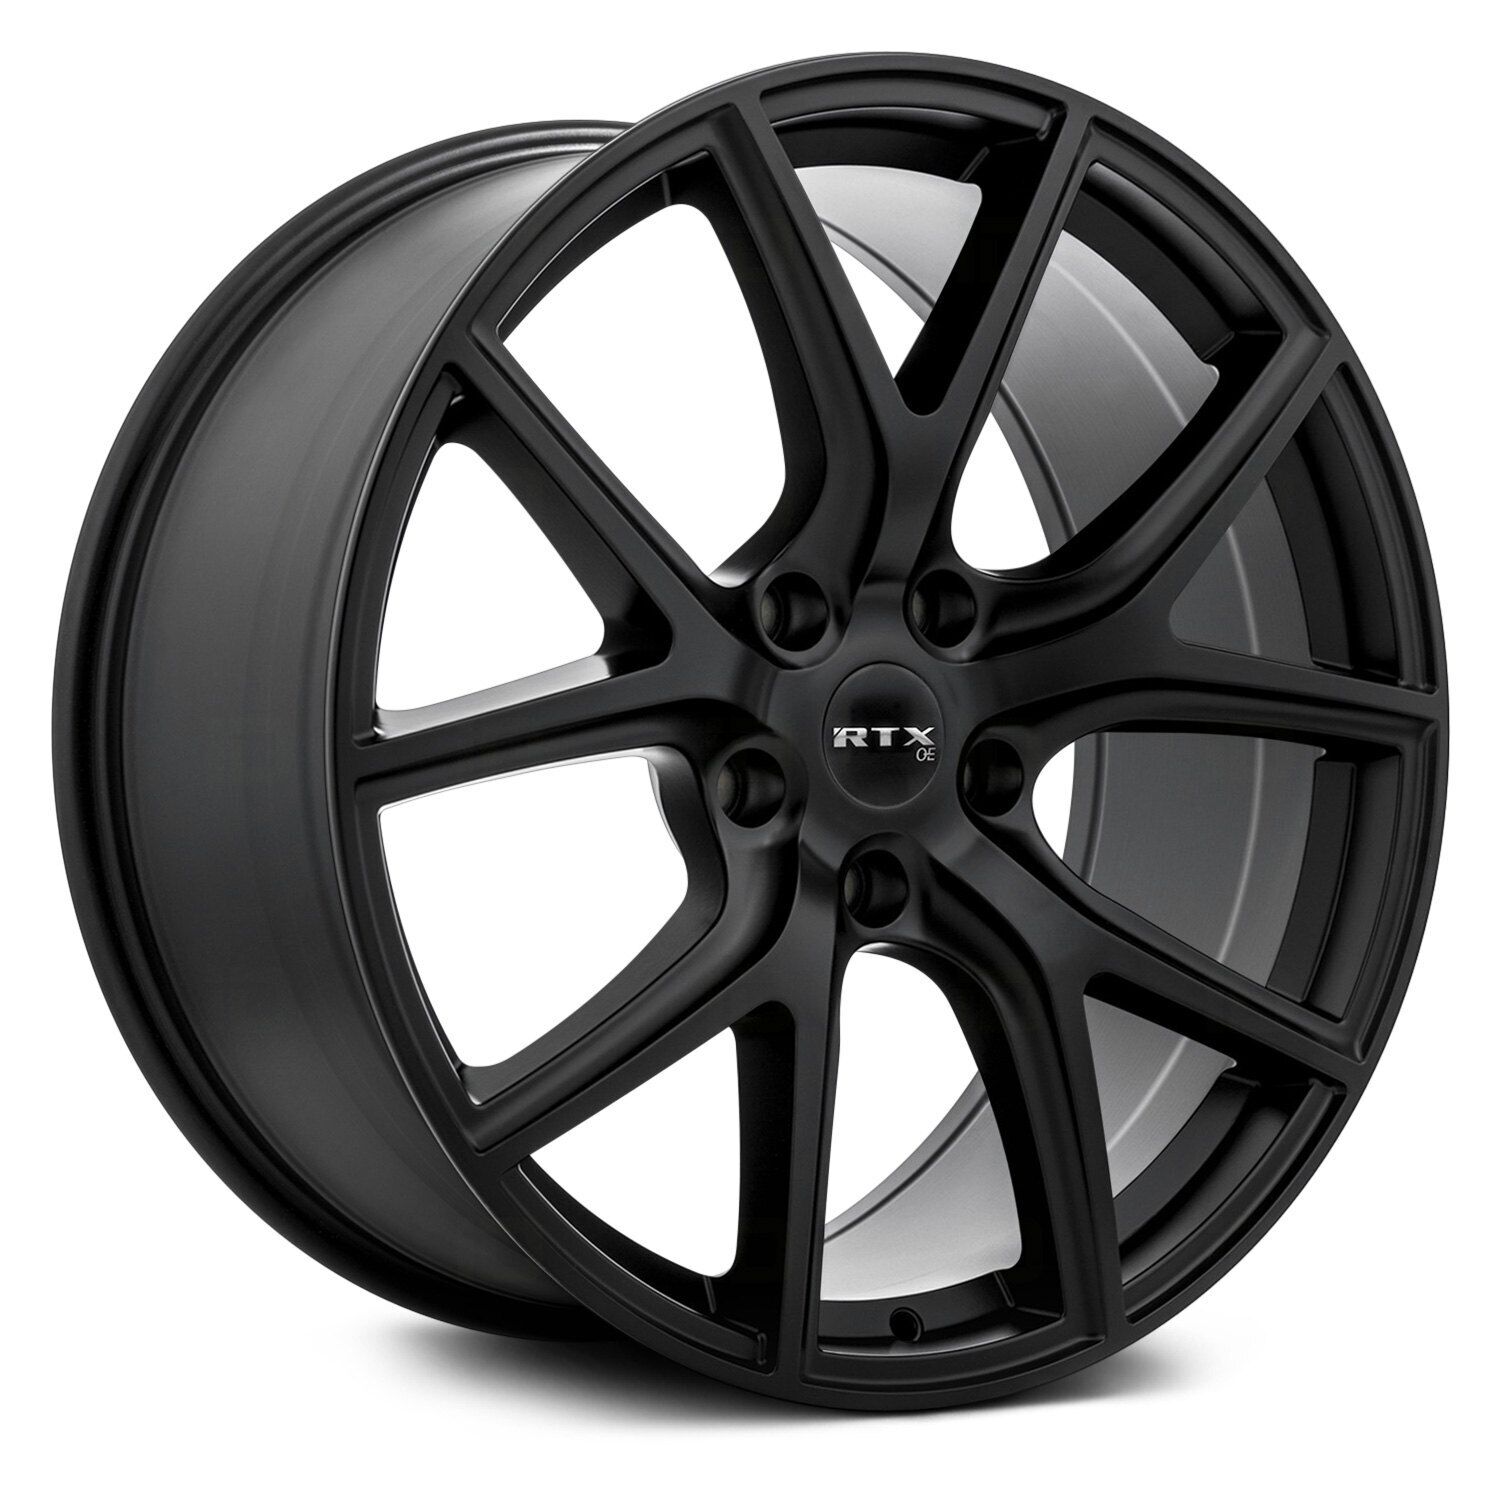 RTX CJ01 Wheels 20x9 (35, 5x127, 71.5) Black Rims Set of 4